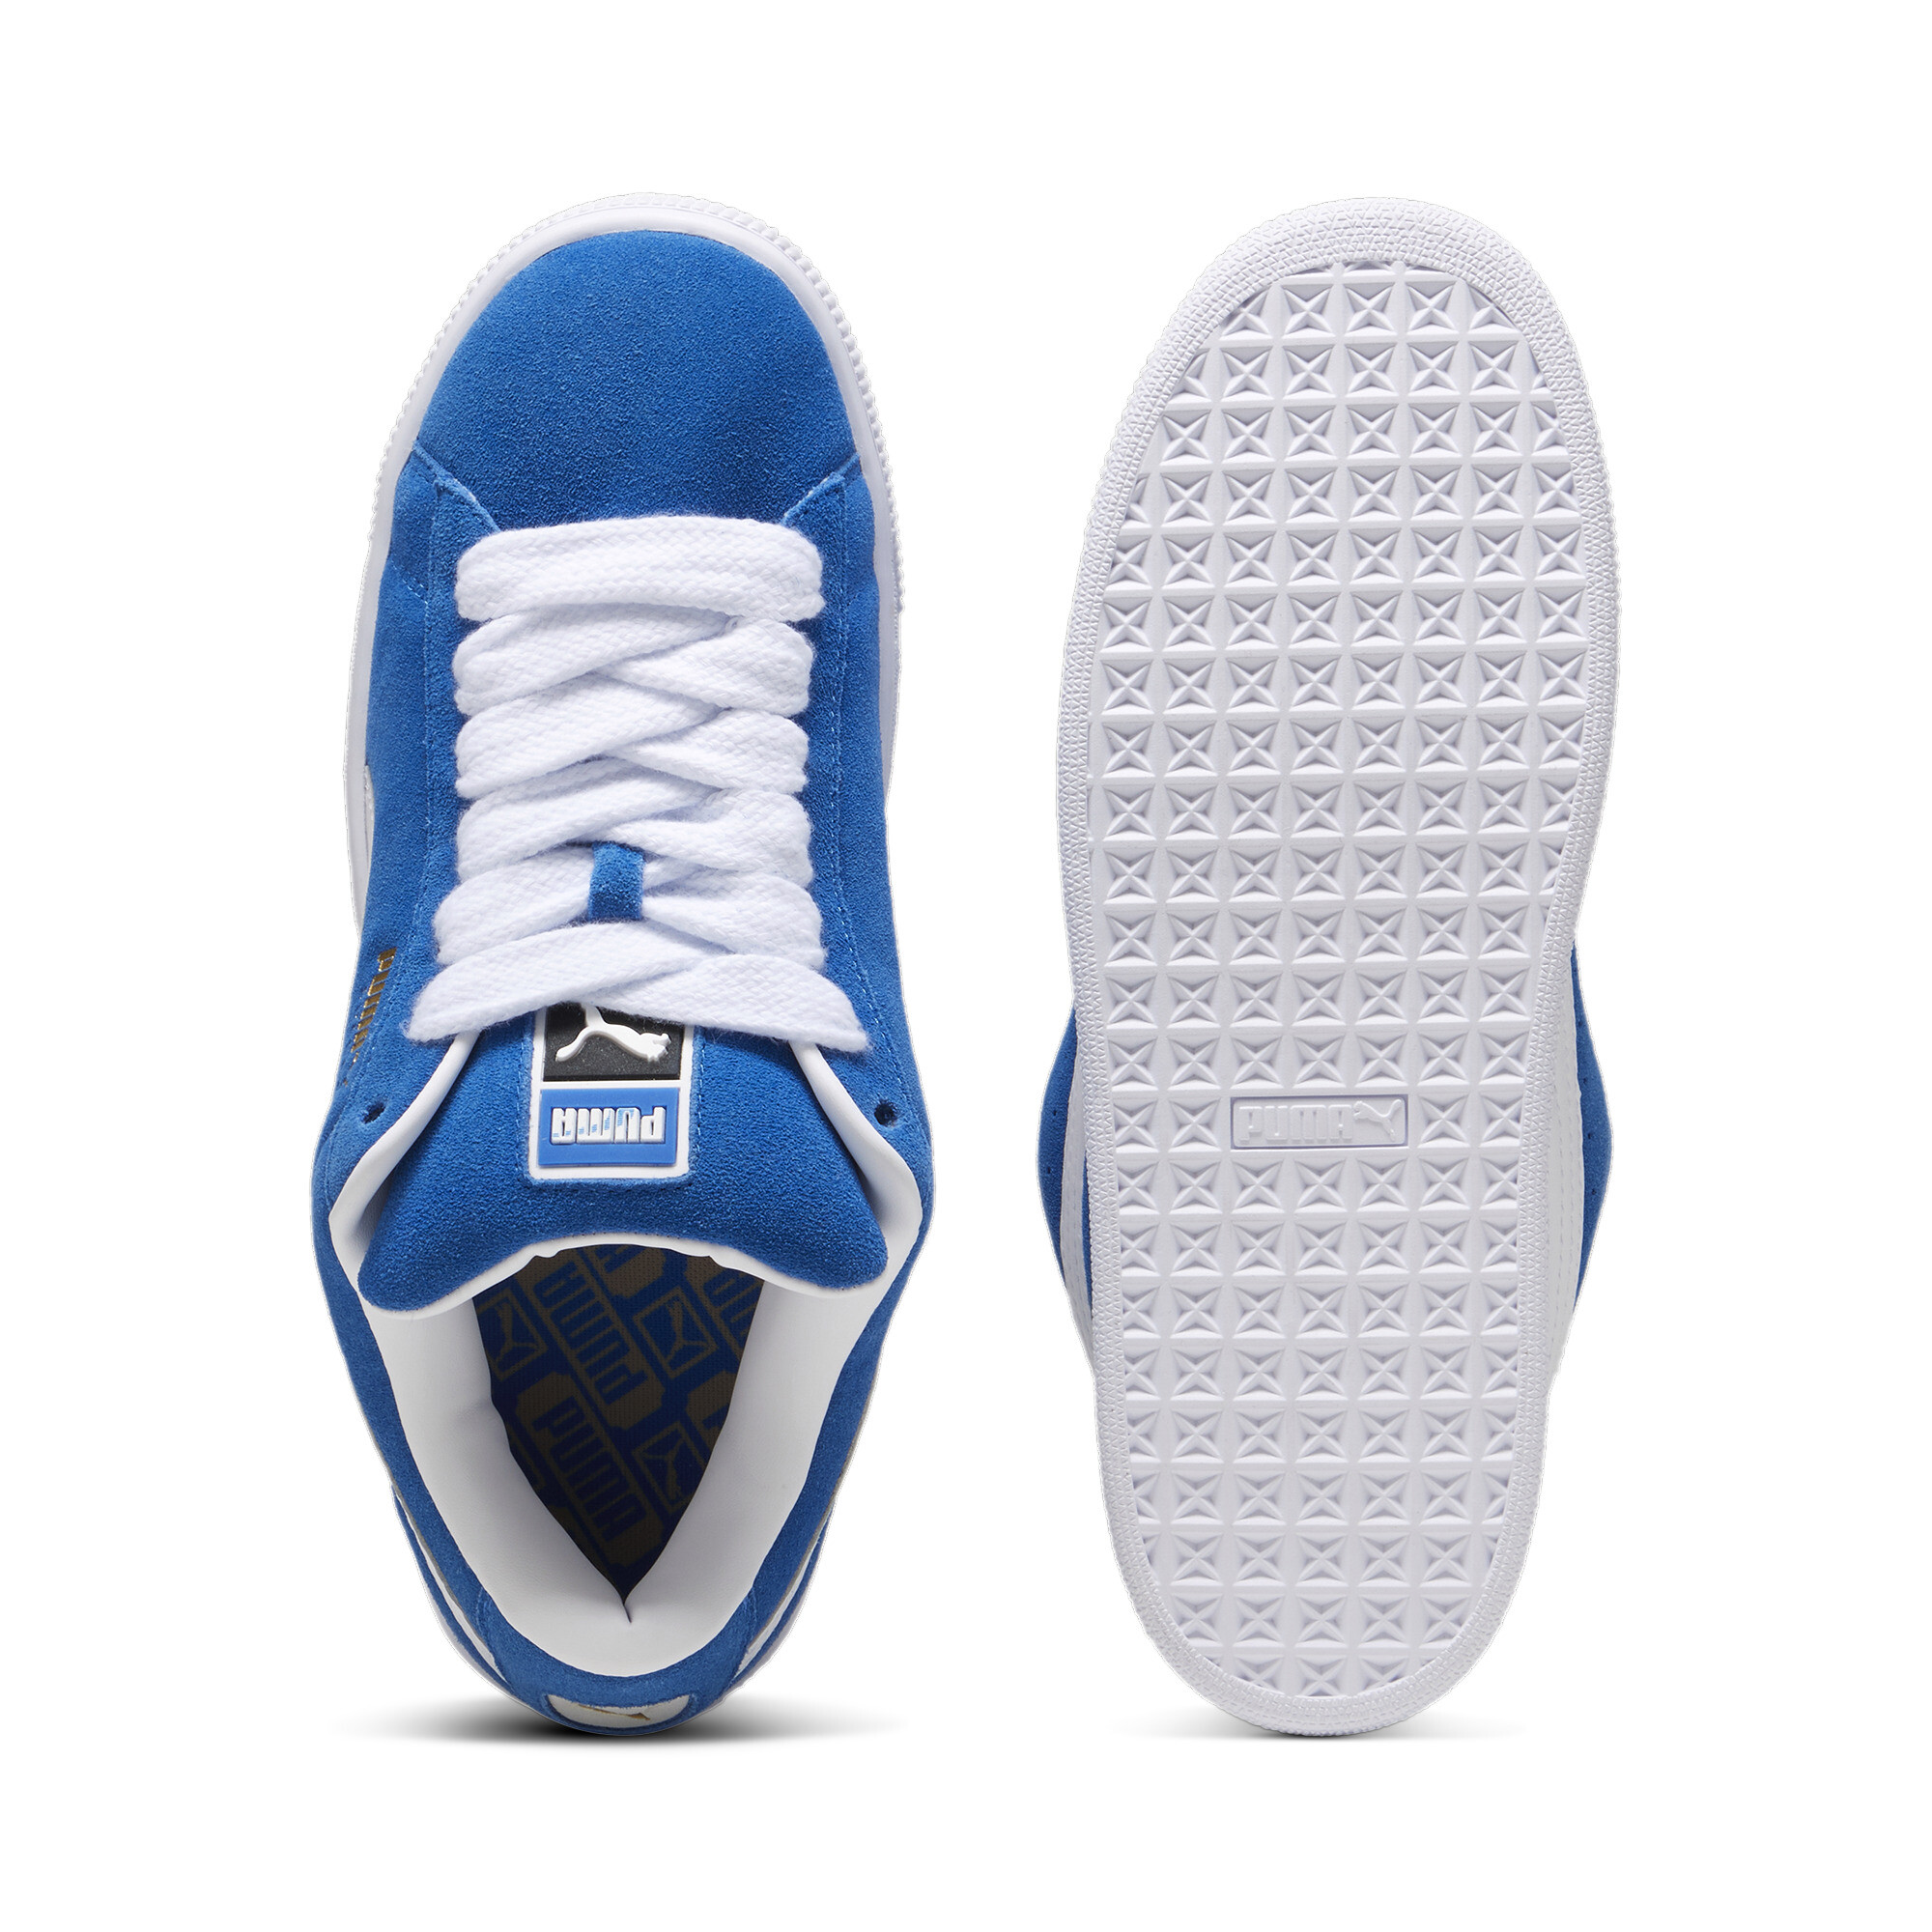 Puma Suede XL Sneakers Unisex, Blue, Size 36, Shoes